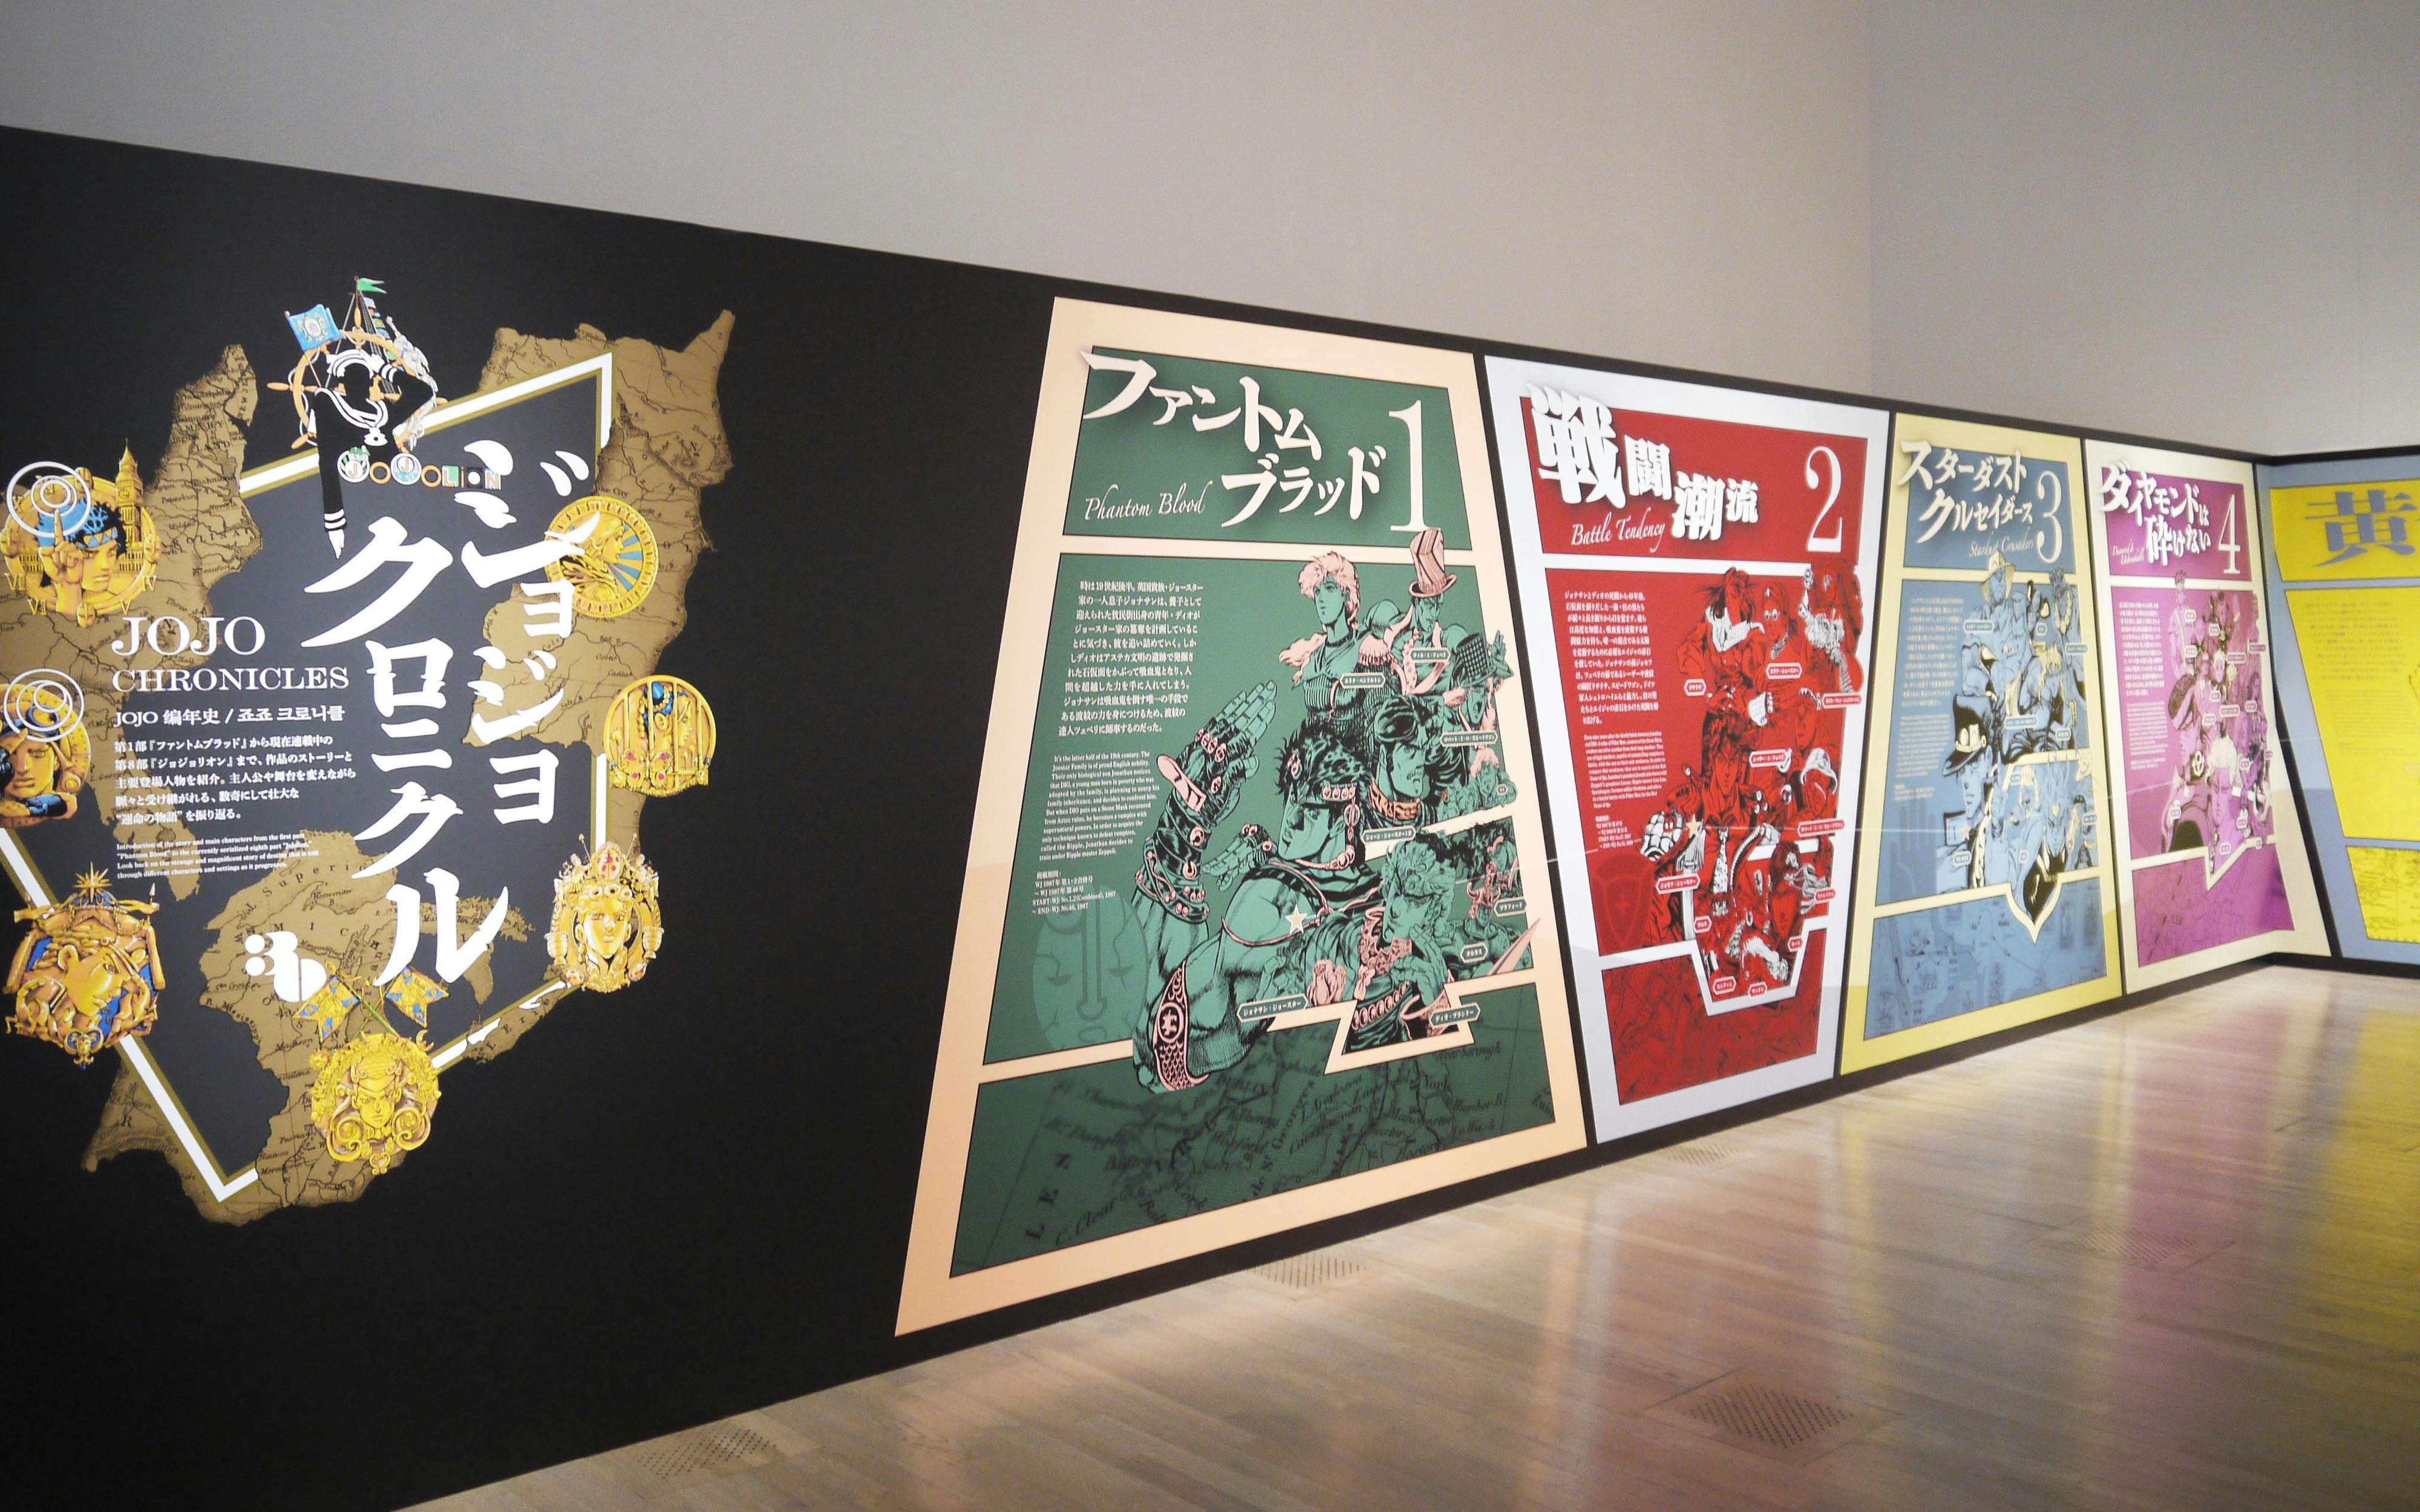 荒木飛呂彦原画展 JOJO 冒険の波紋」が国立新美術館で開幕。30年分の